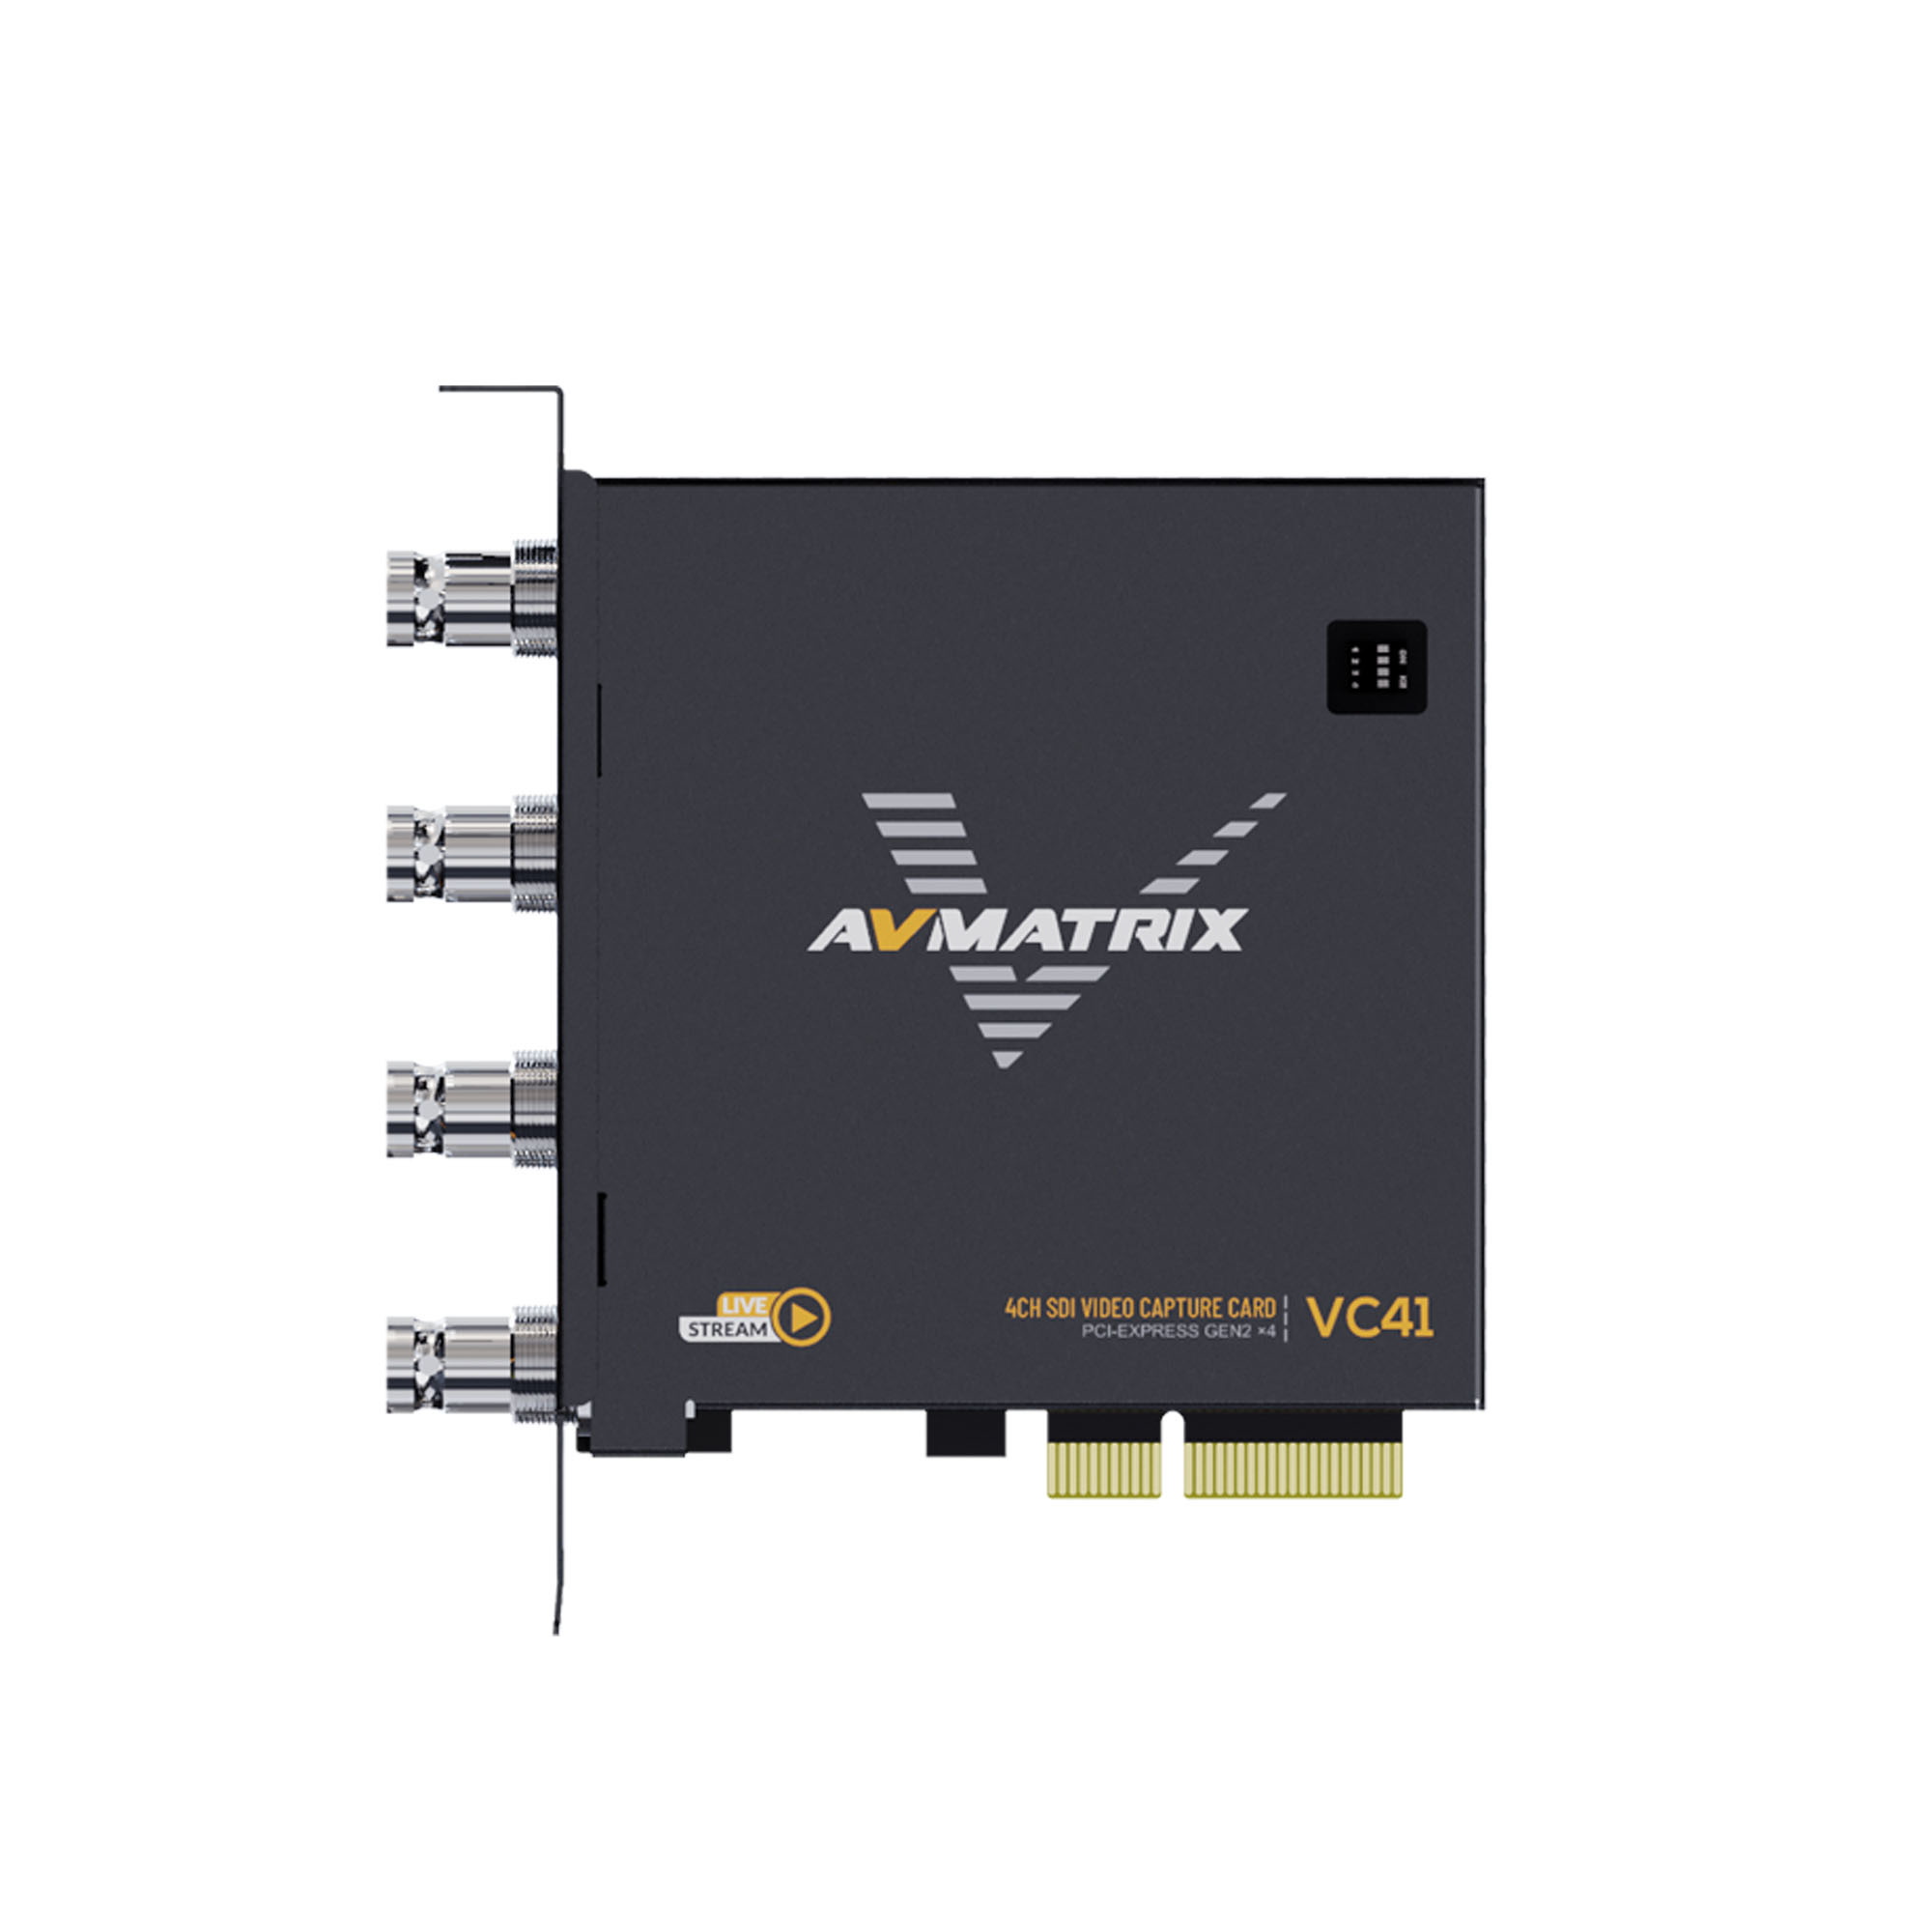    AVMATRIX VC41 4CH 3G-SDI PCIE   Ultra-mart